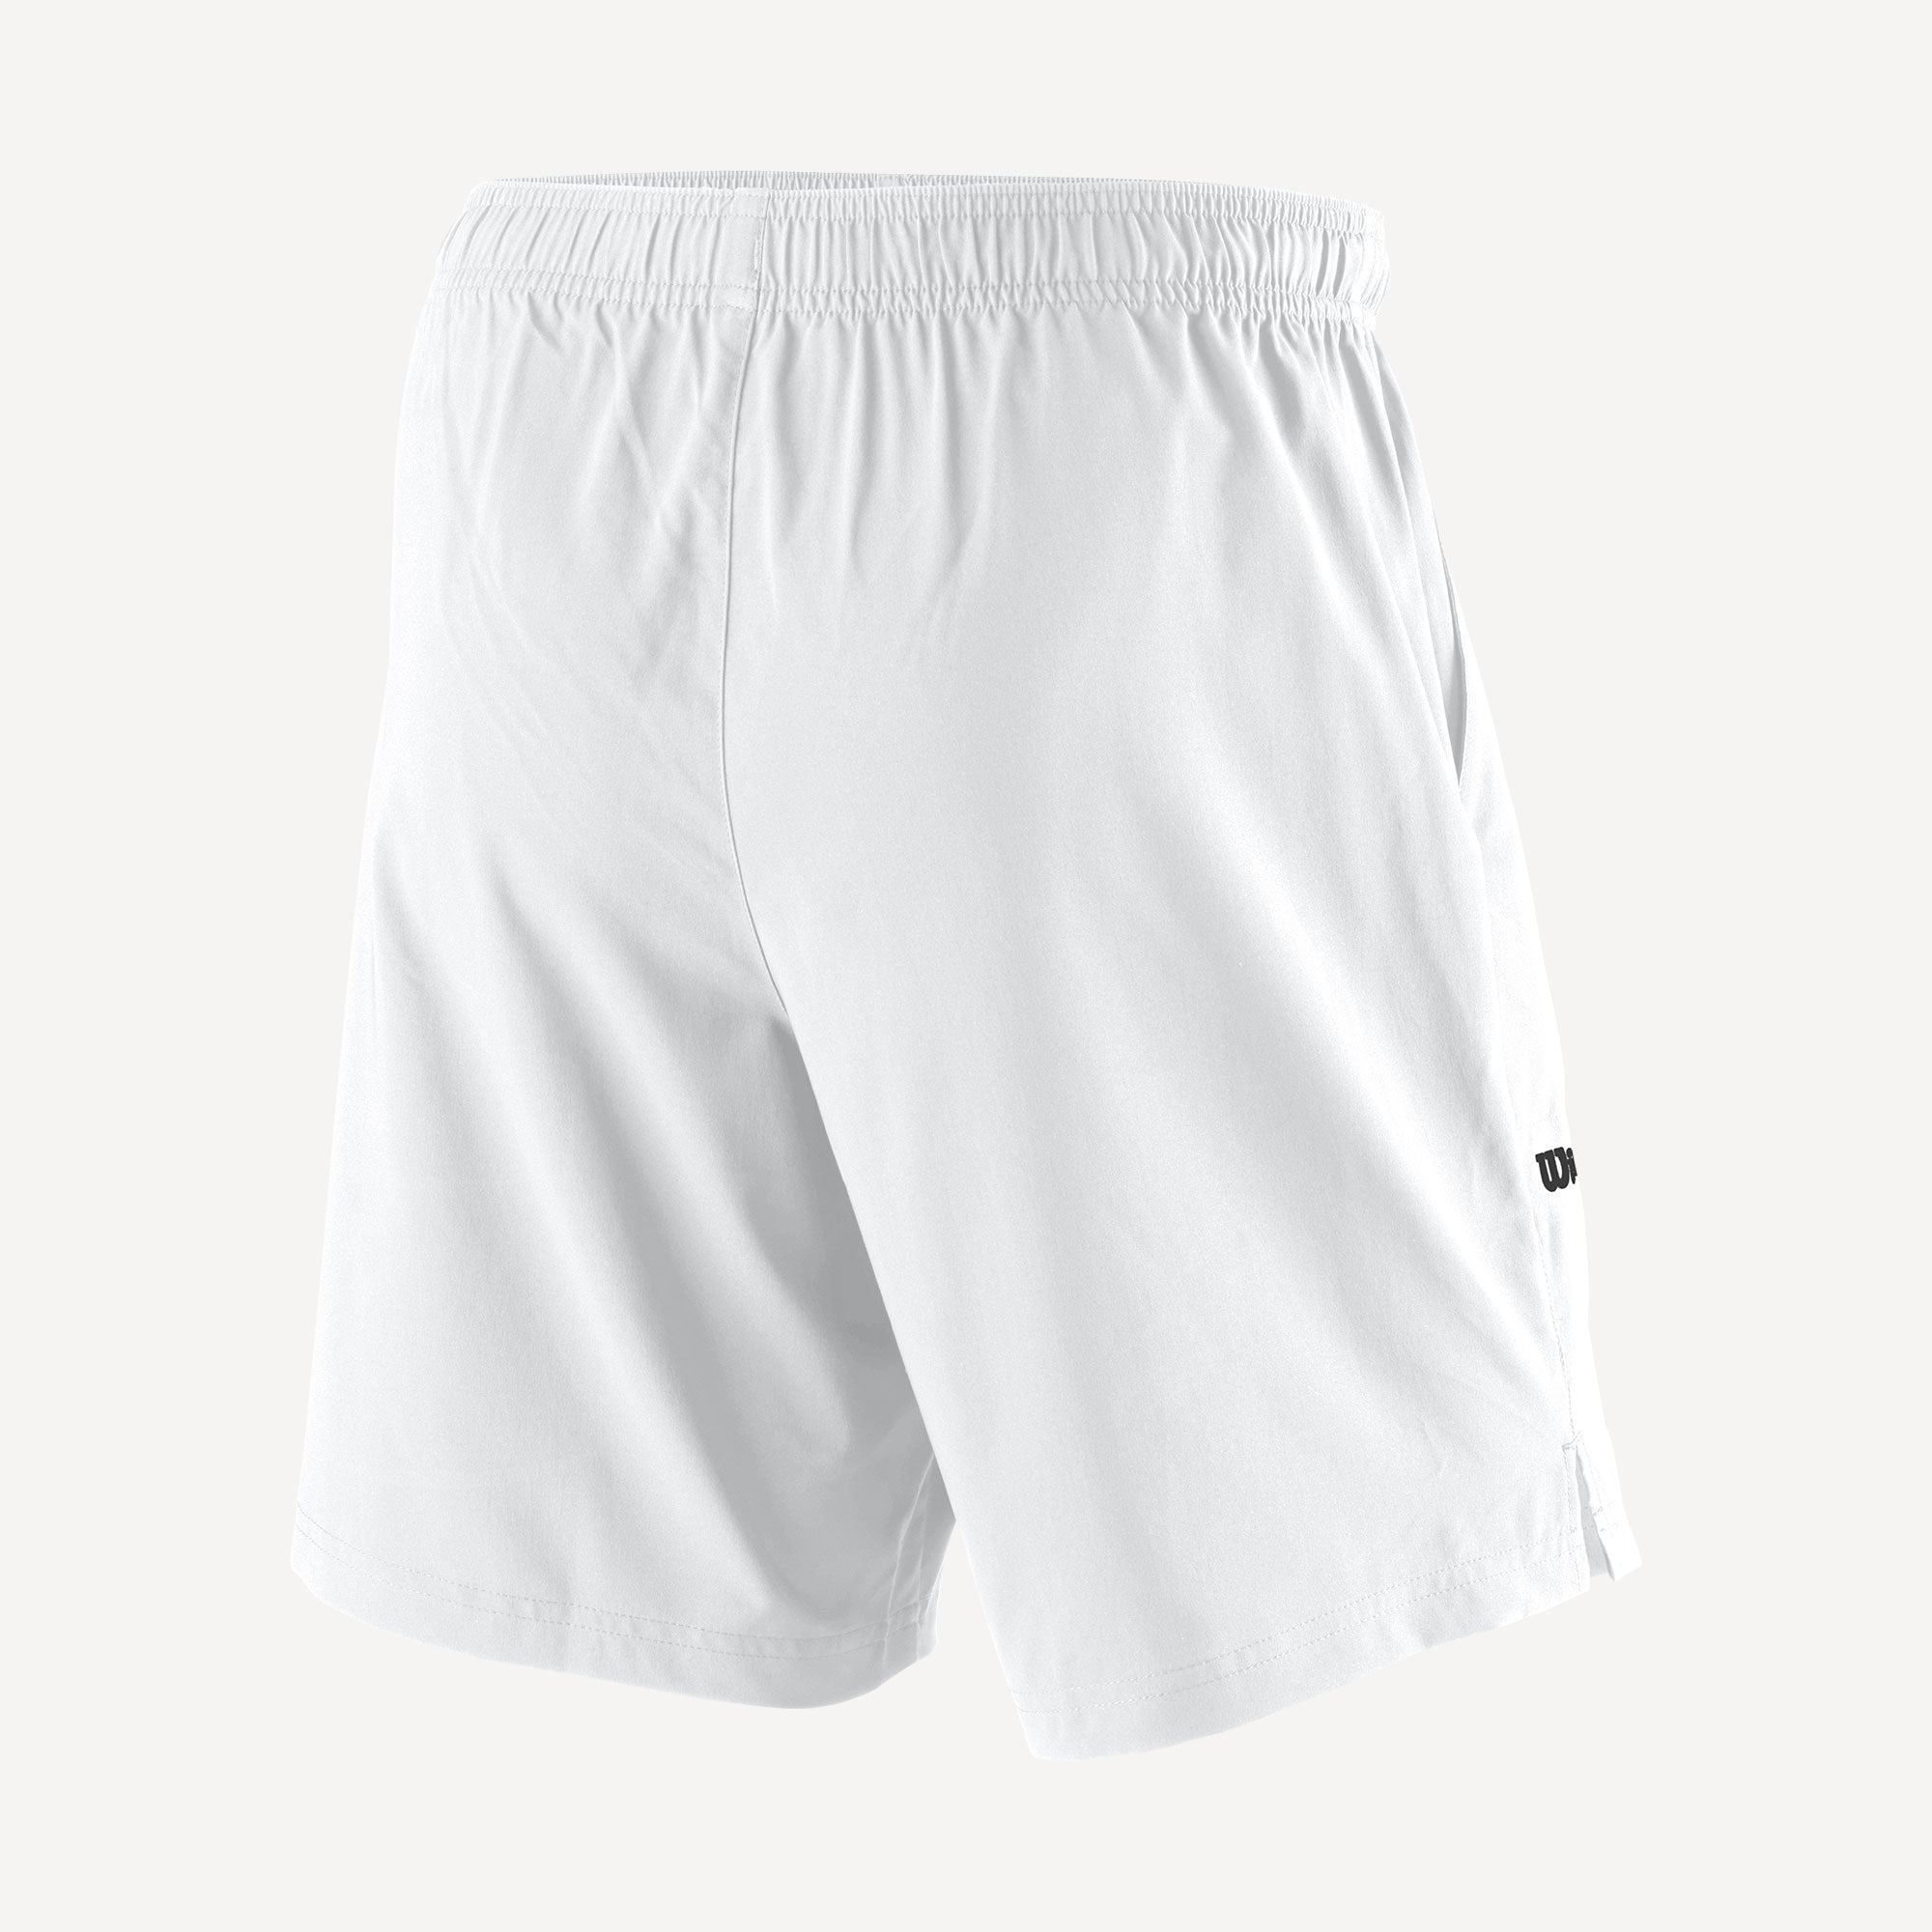 Wilson Team 2 Men's 8-Inch Tennis Shorts White (2)